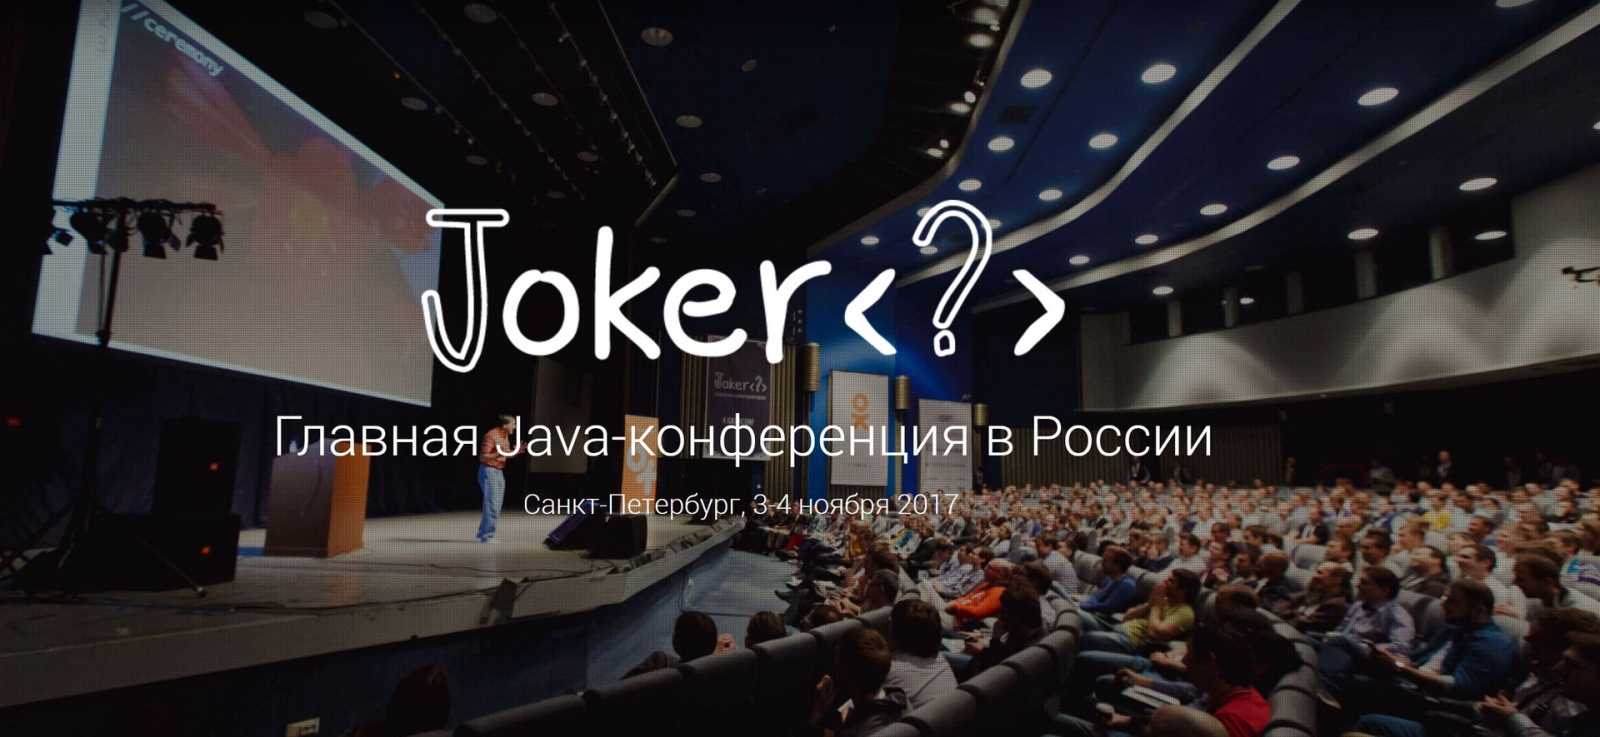 Анонс конференции Joker 2017: День Java-единства - 1